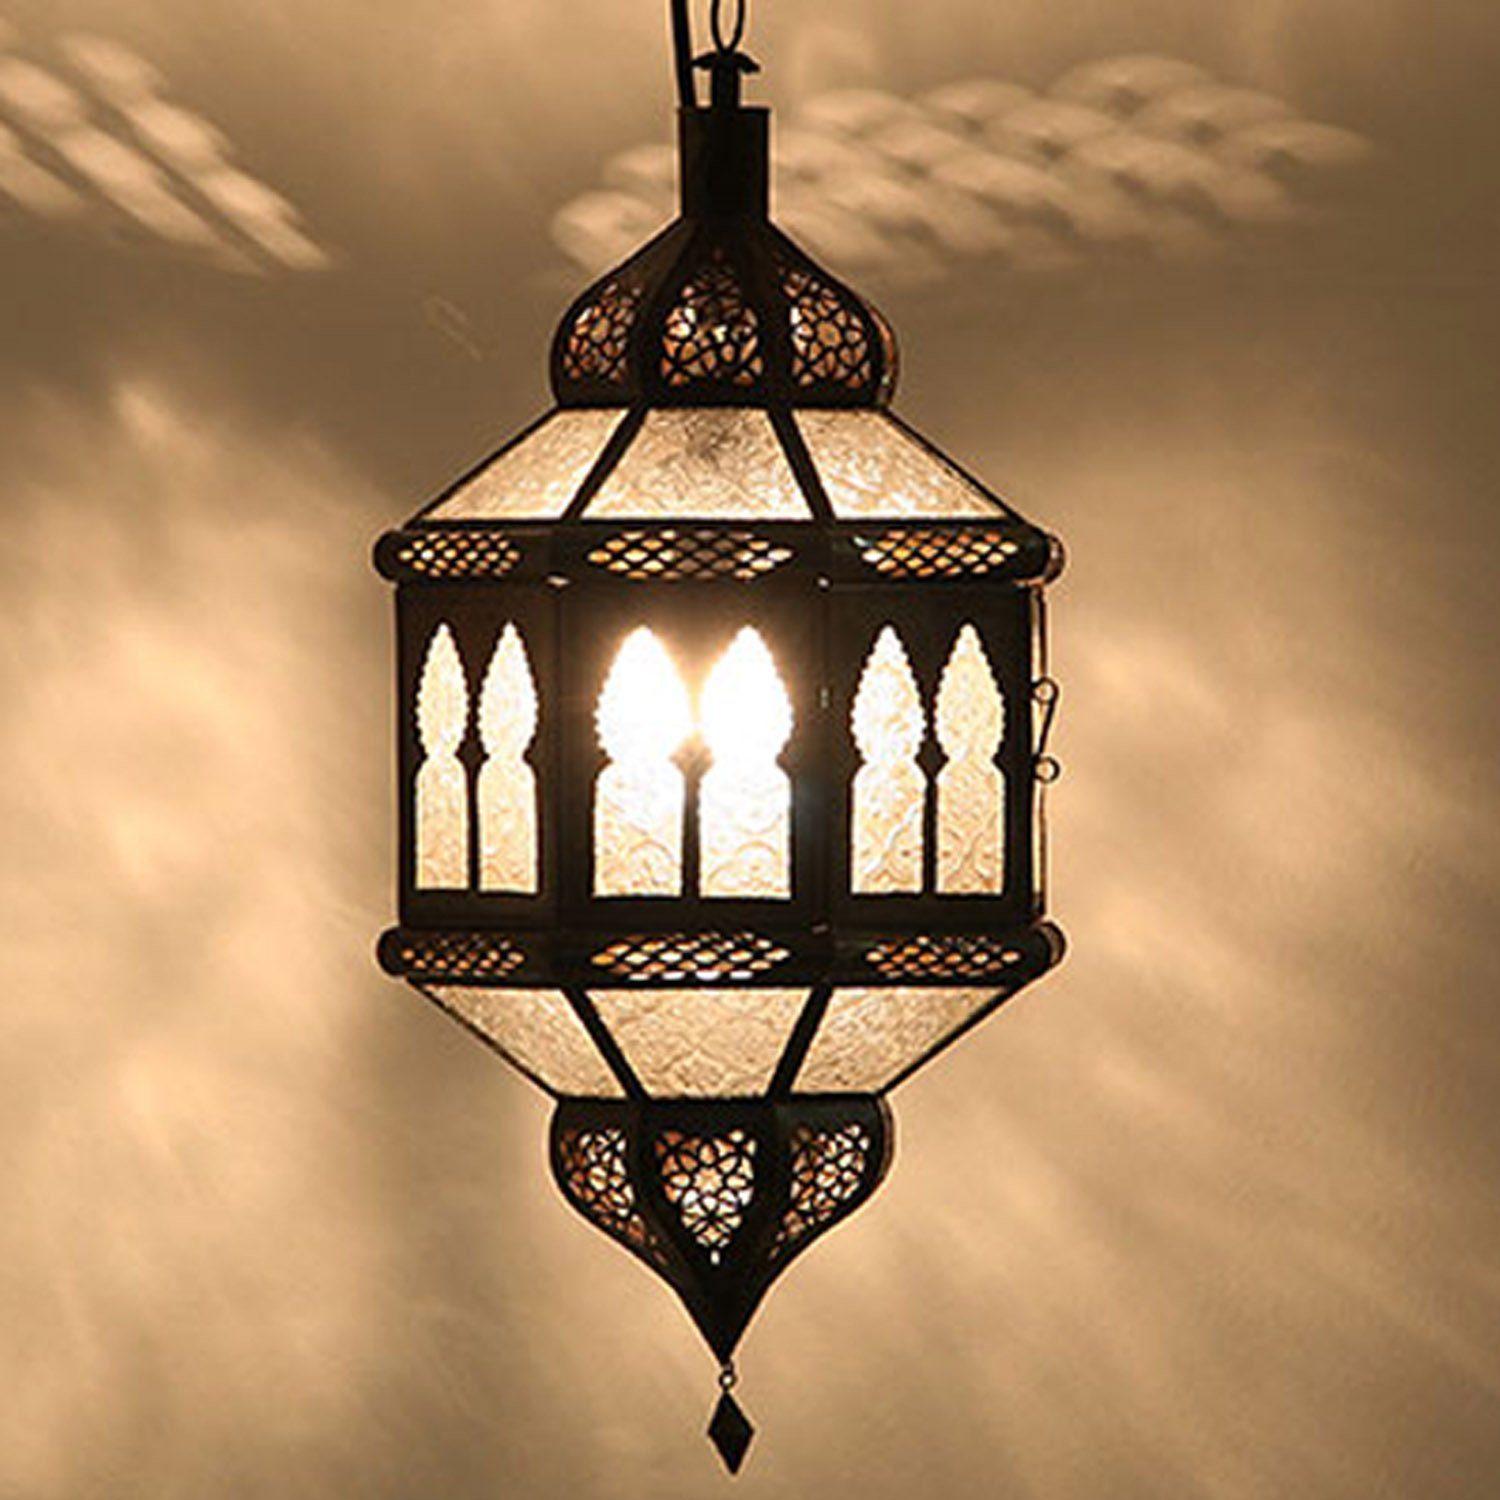 Casa Moro Hängeleuchte »Marokkanische Lampe Trombia Biban Weiß H 50 cm aus  Metall & Reliefglas handgefertigt, Kunsthandwerk aus Marrakesch,  orientalische Hängeleuchte wie aus 1001 Nacht, L1234«, Handmade online  kaufen | OTTO